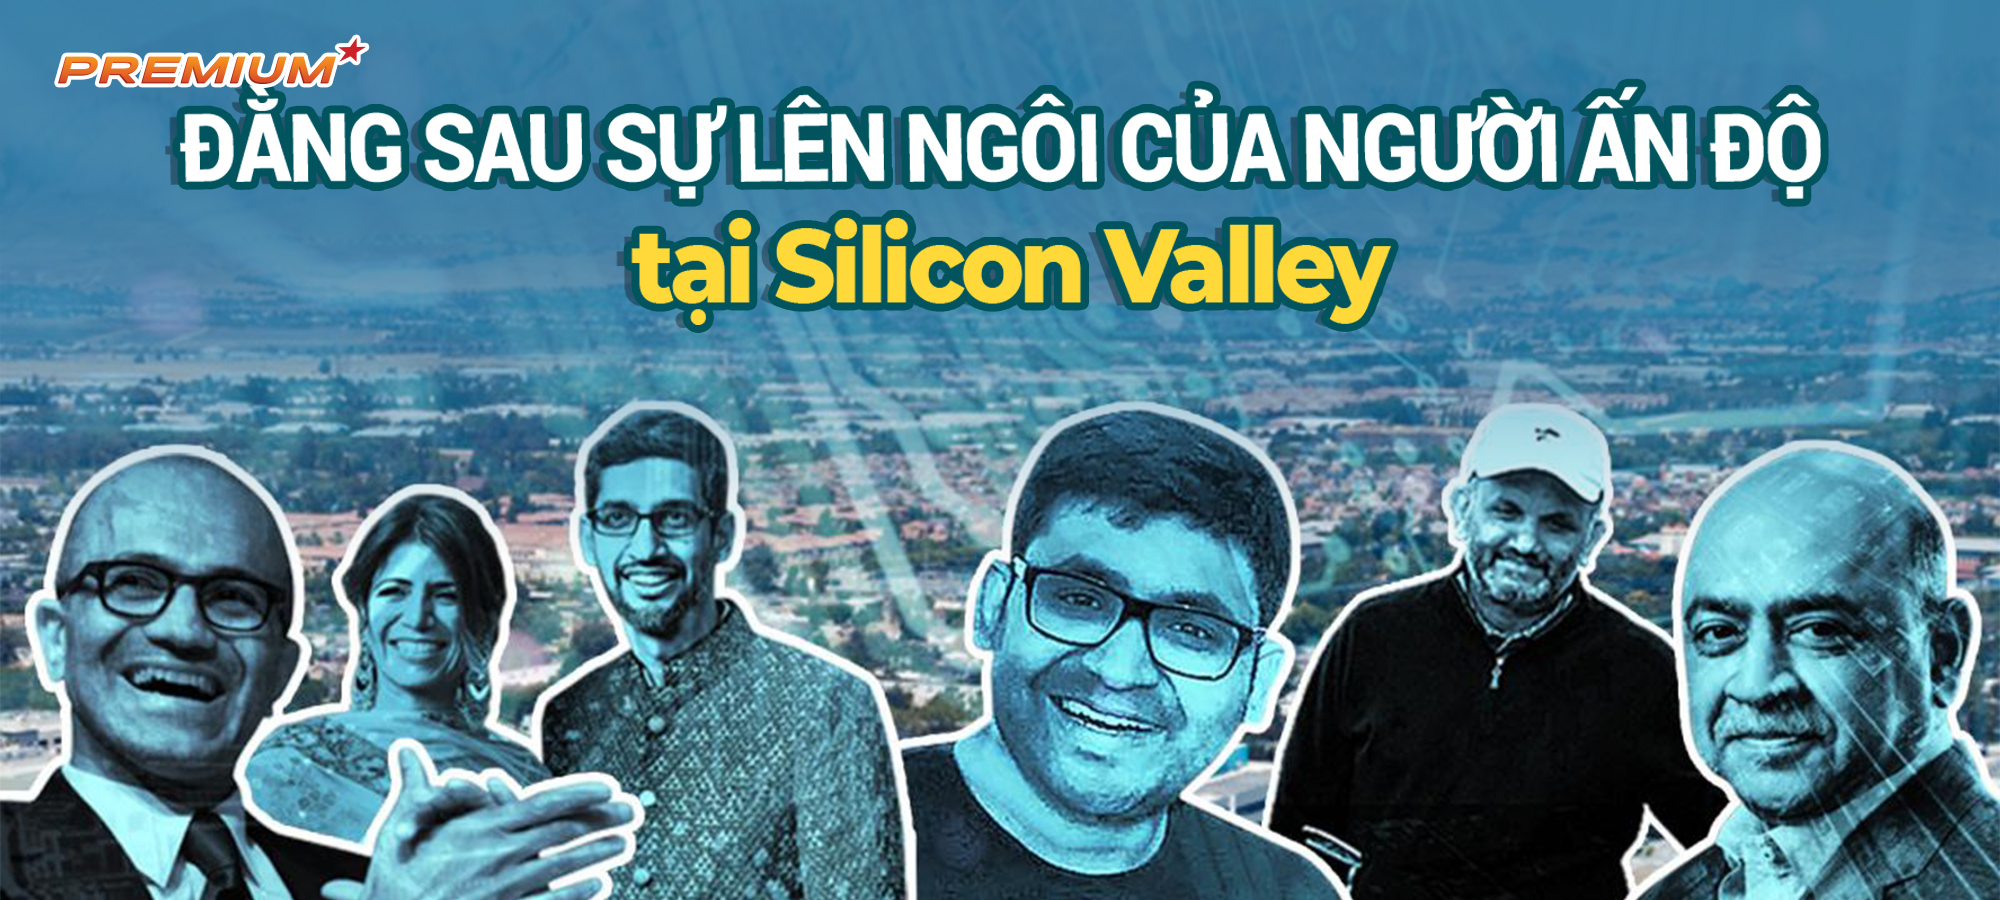 Đằng sau sự lên ngôi của người Ấn tại Silicon Valley